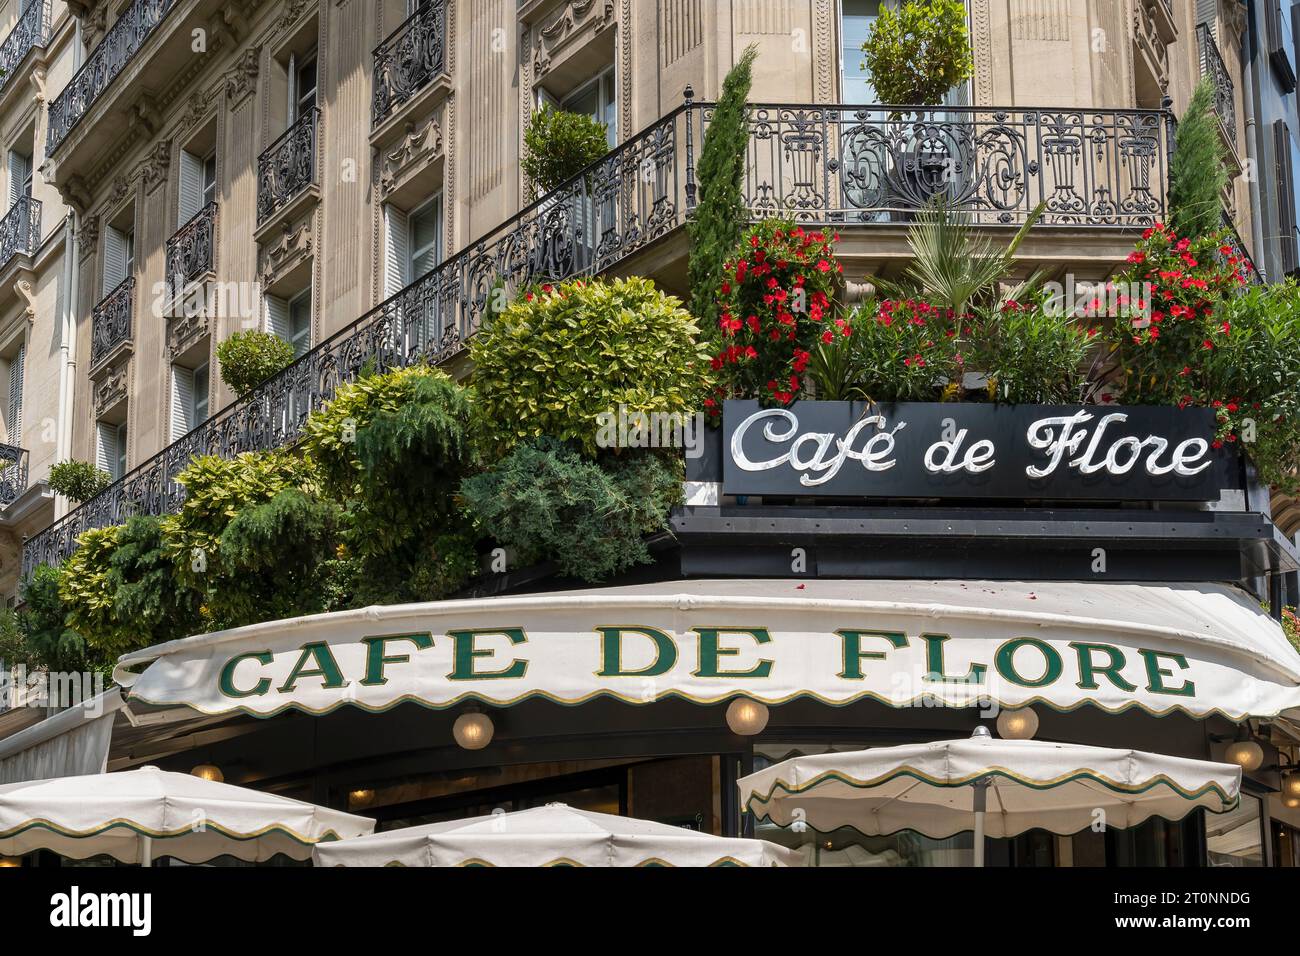 Das Cafe de Flore ist ein historisches Pariser Café und Restaurant im Viertel Saint-Germain-des-Pres. Paris, Ile de France, Frankreich, Europa, Europäische Union Stockfoto